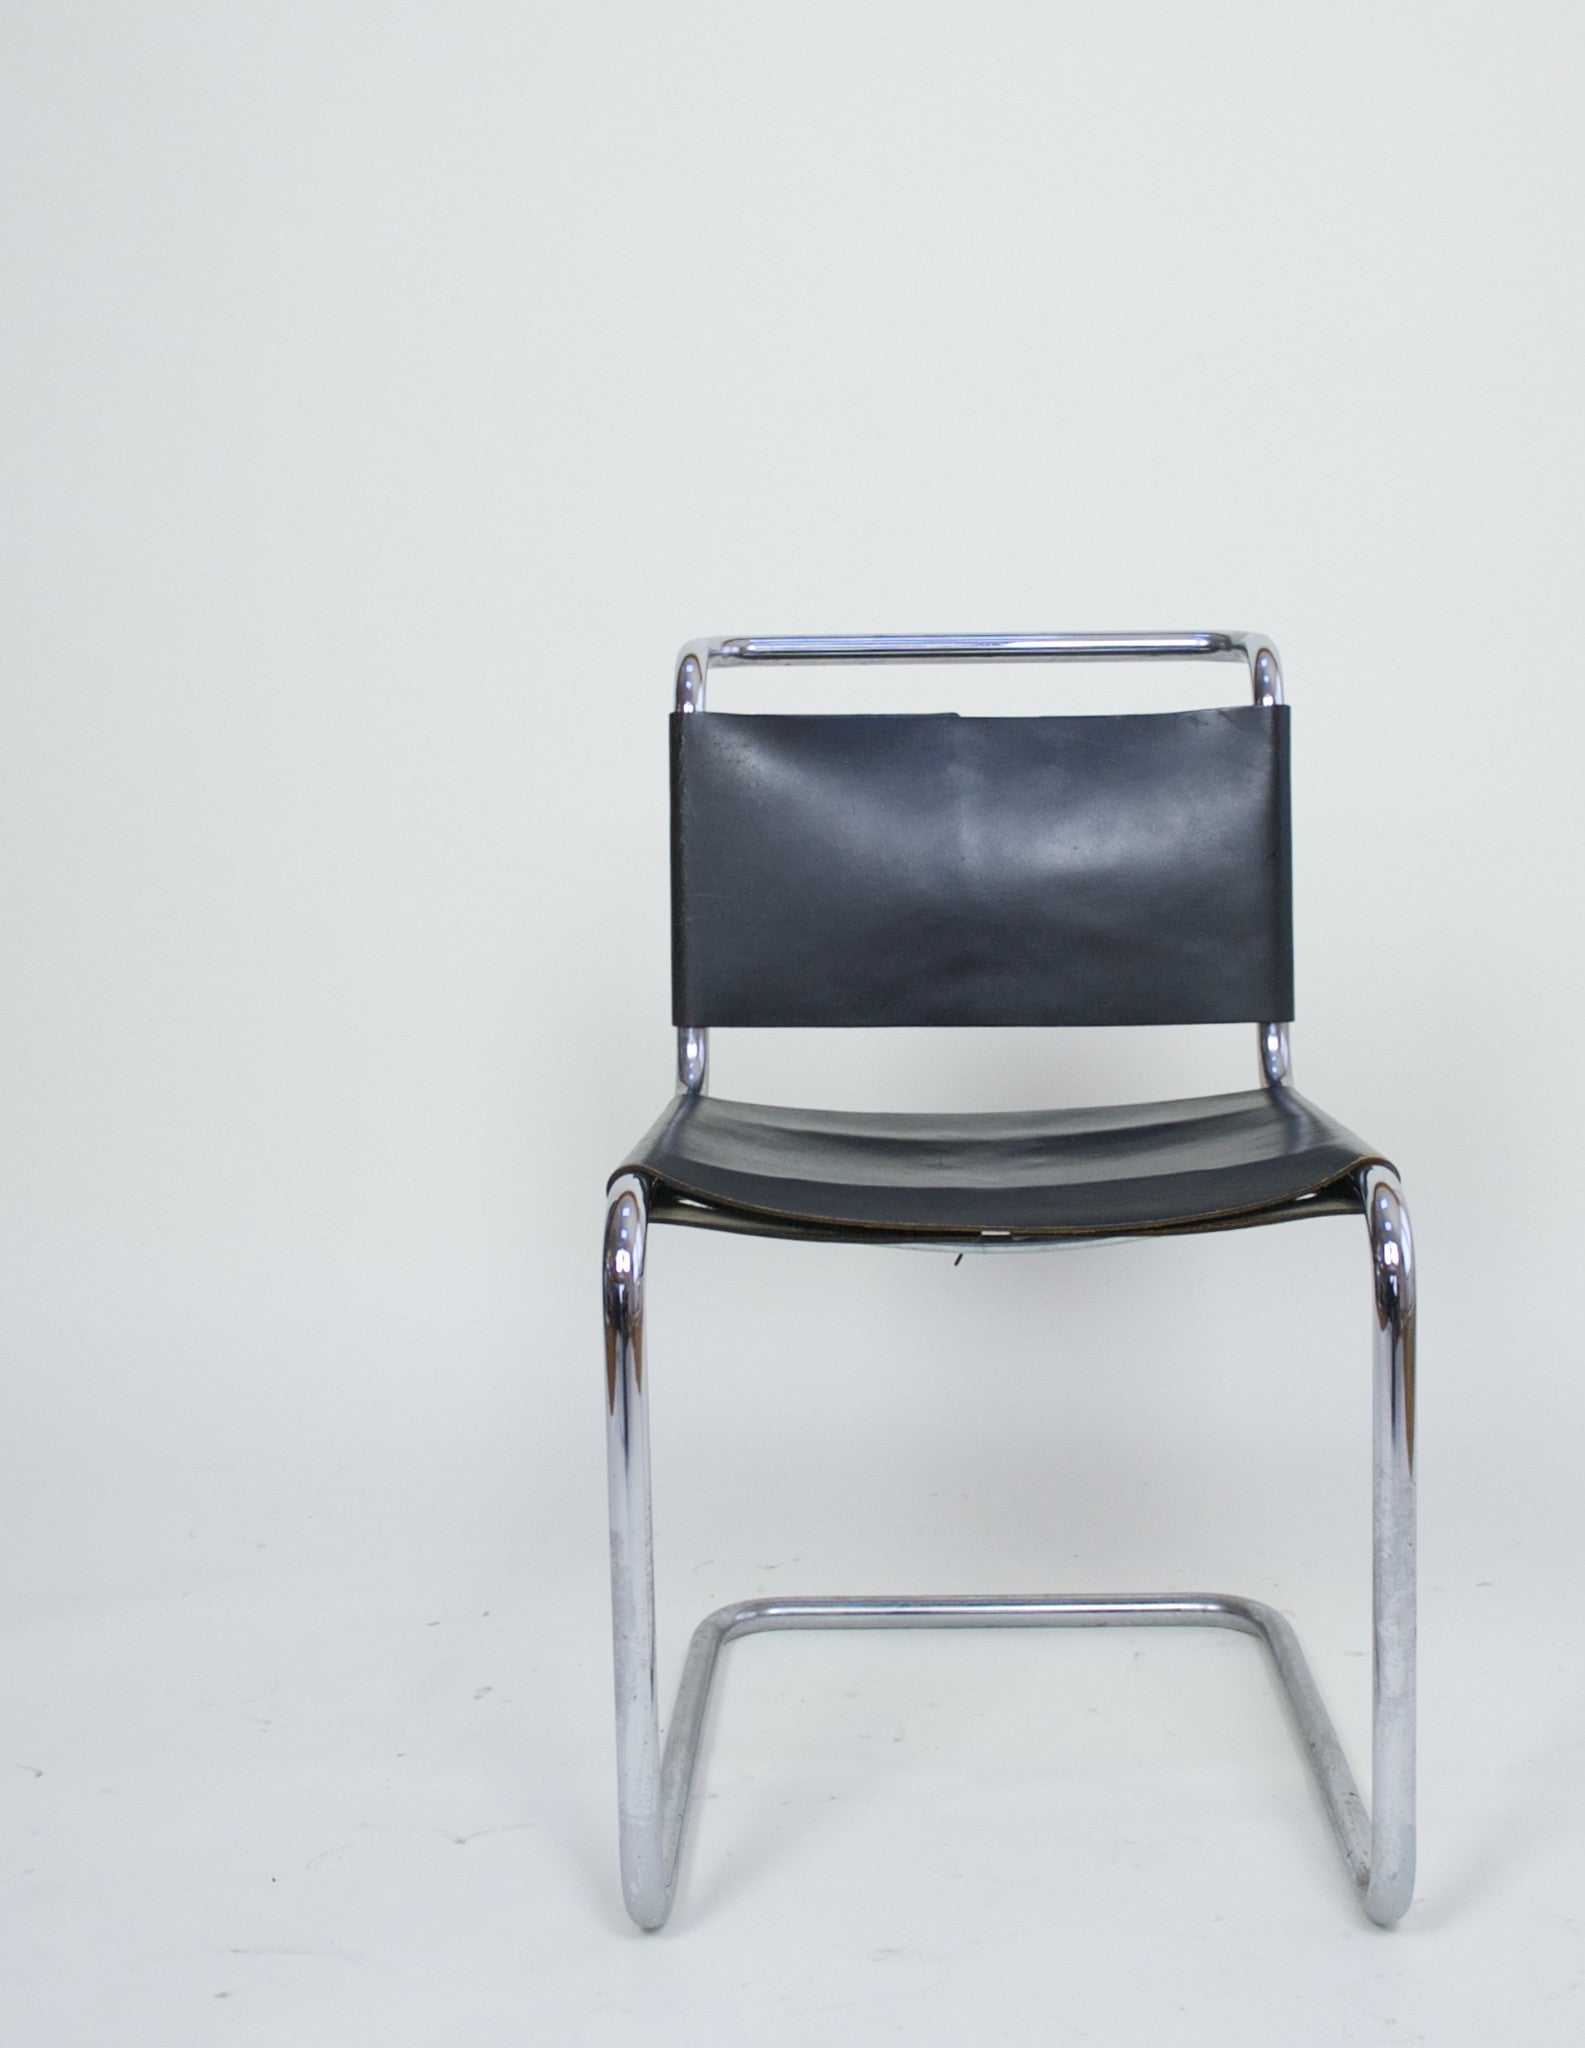 SOLD Knoll International Marcel Breuer B33 Chair - Bauhaus Era